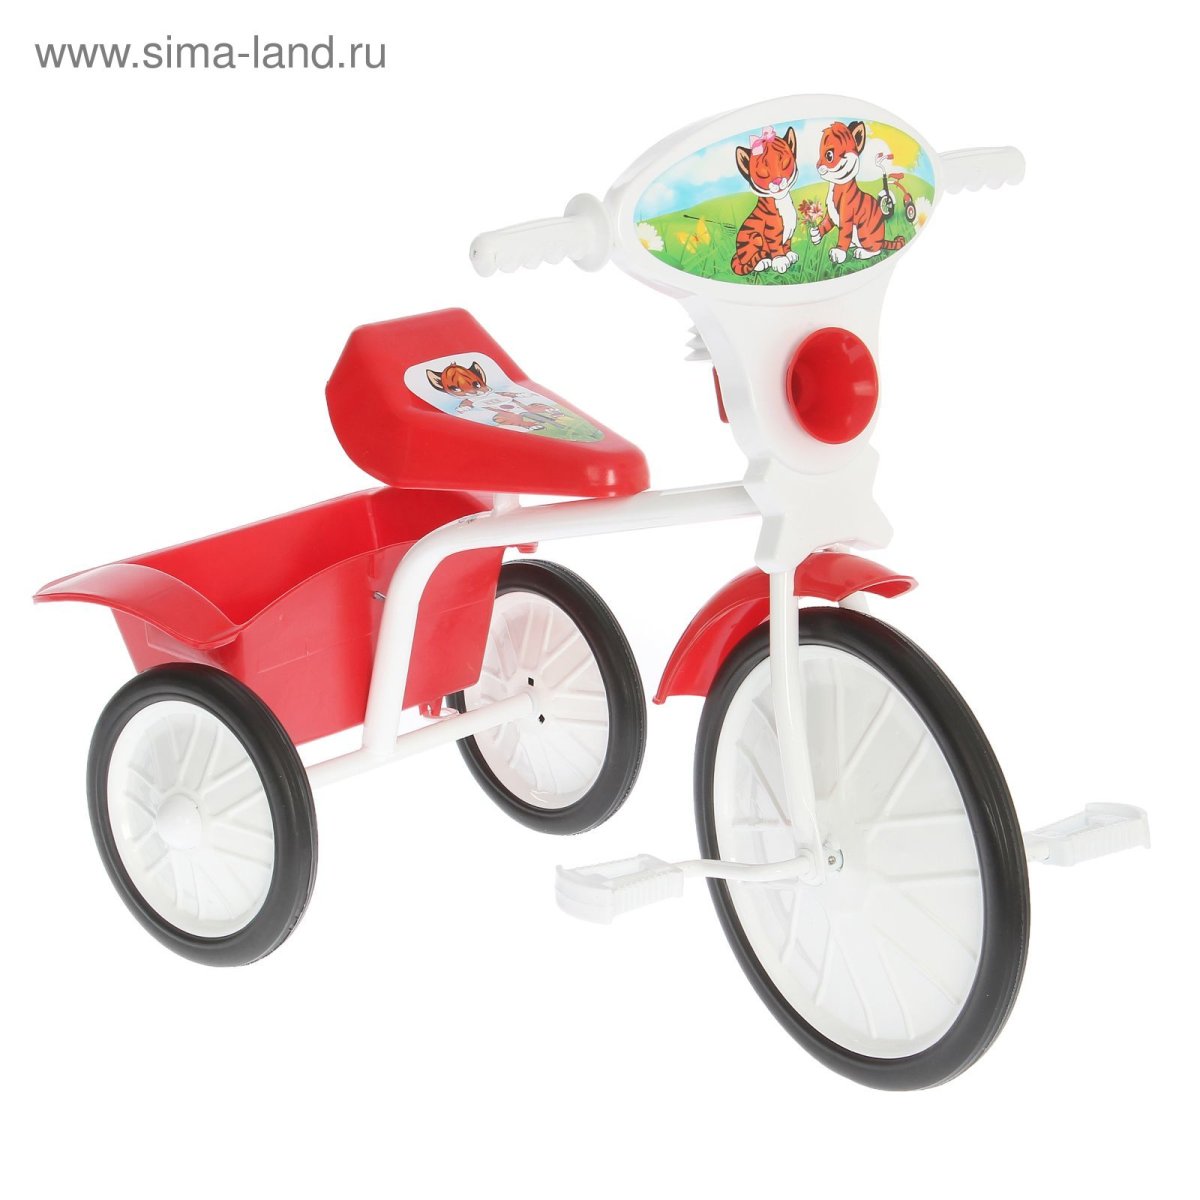 Трехколесный велосипед малыш 750502-10